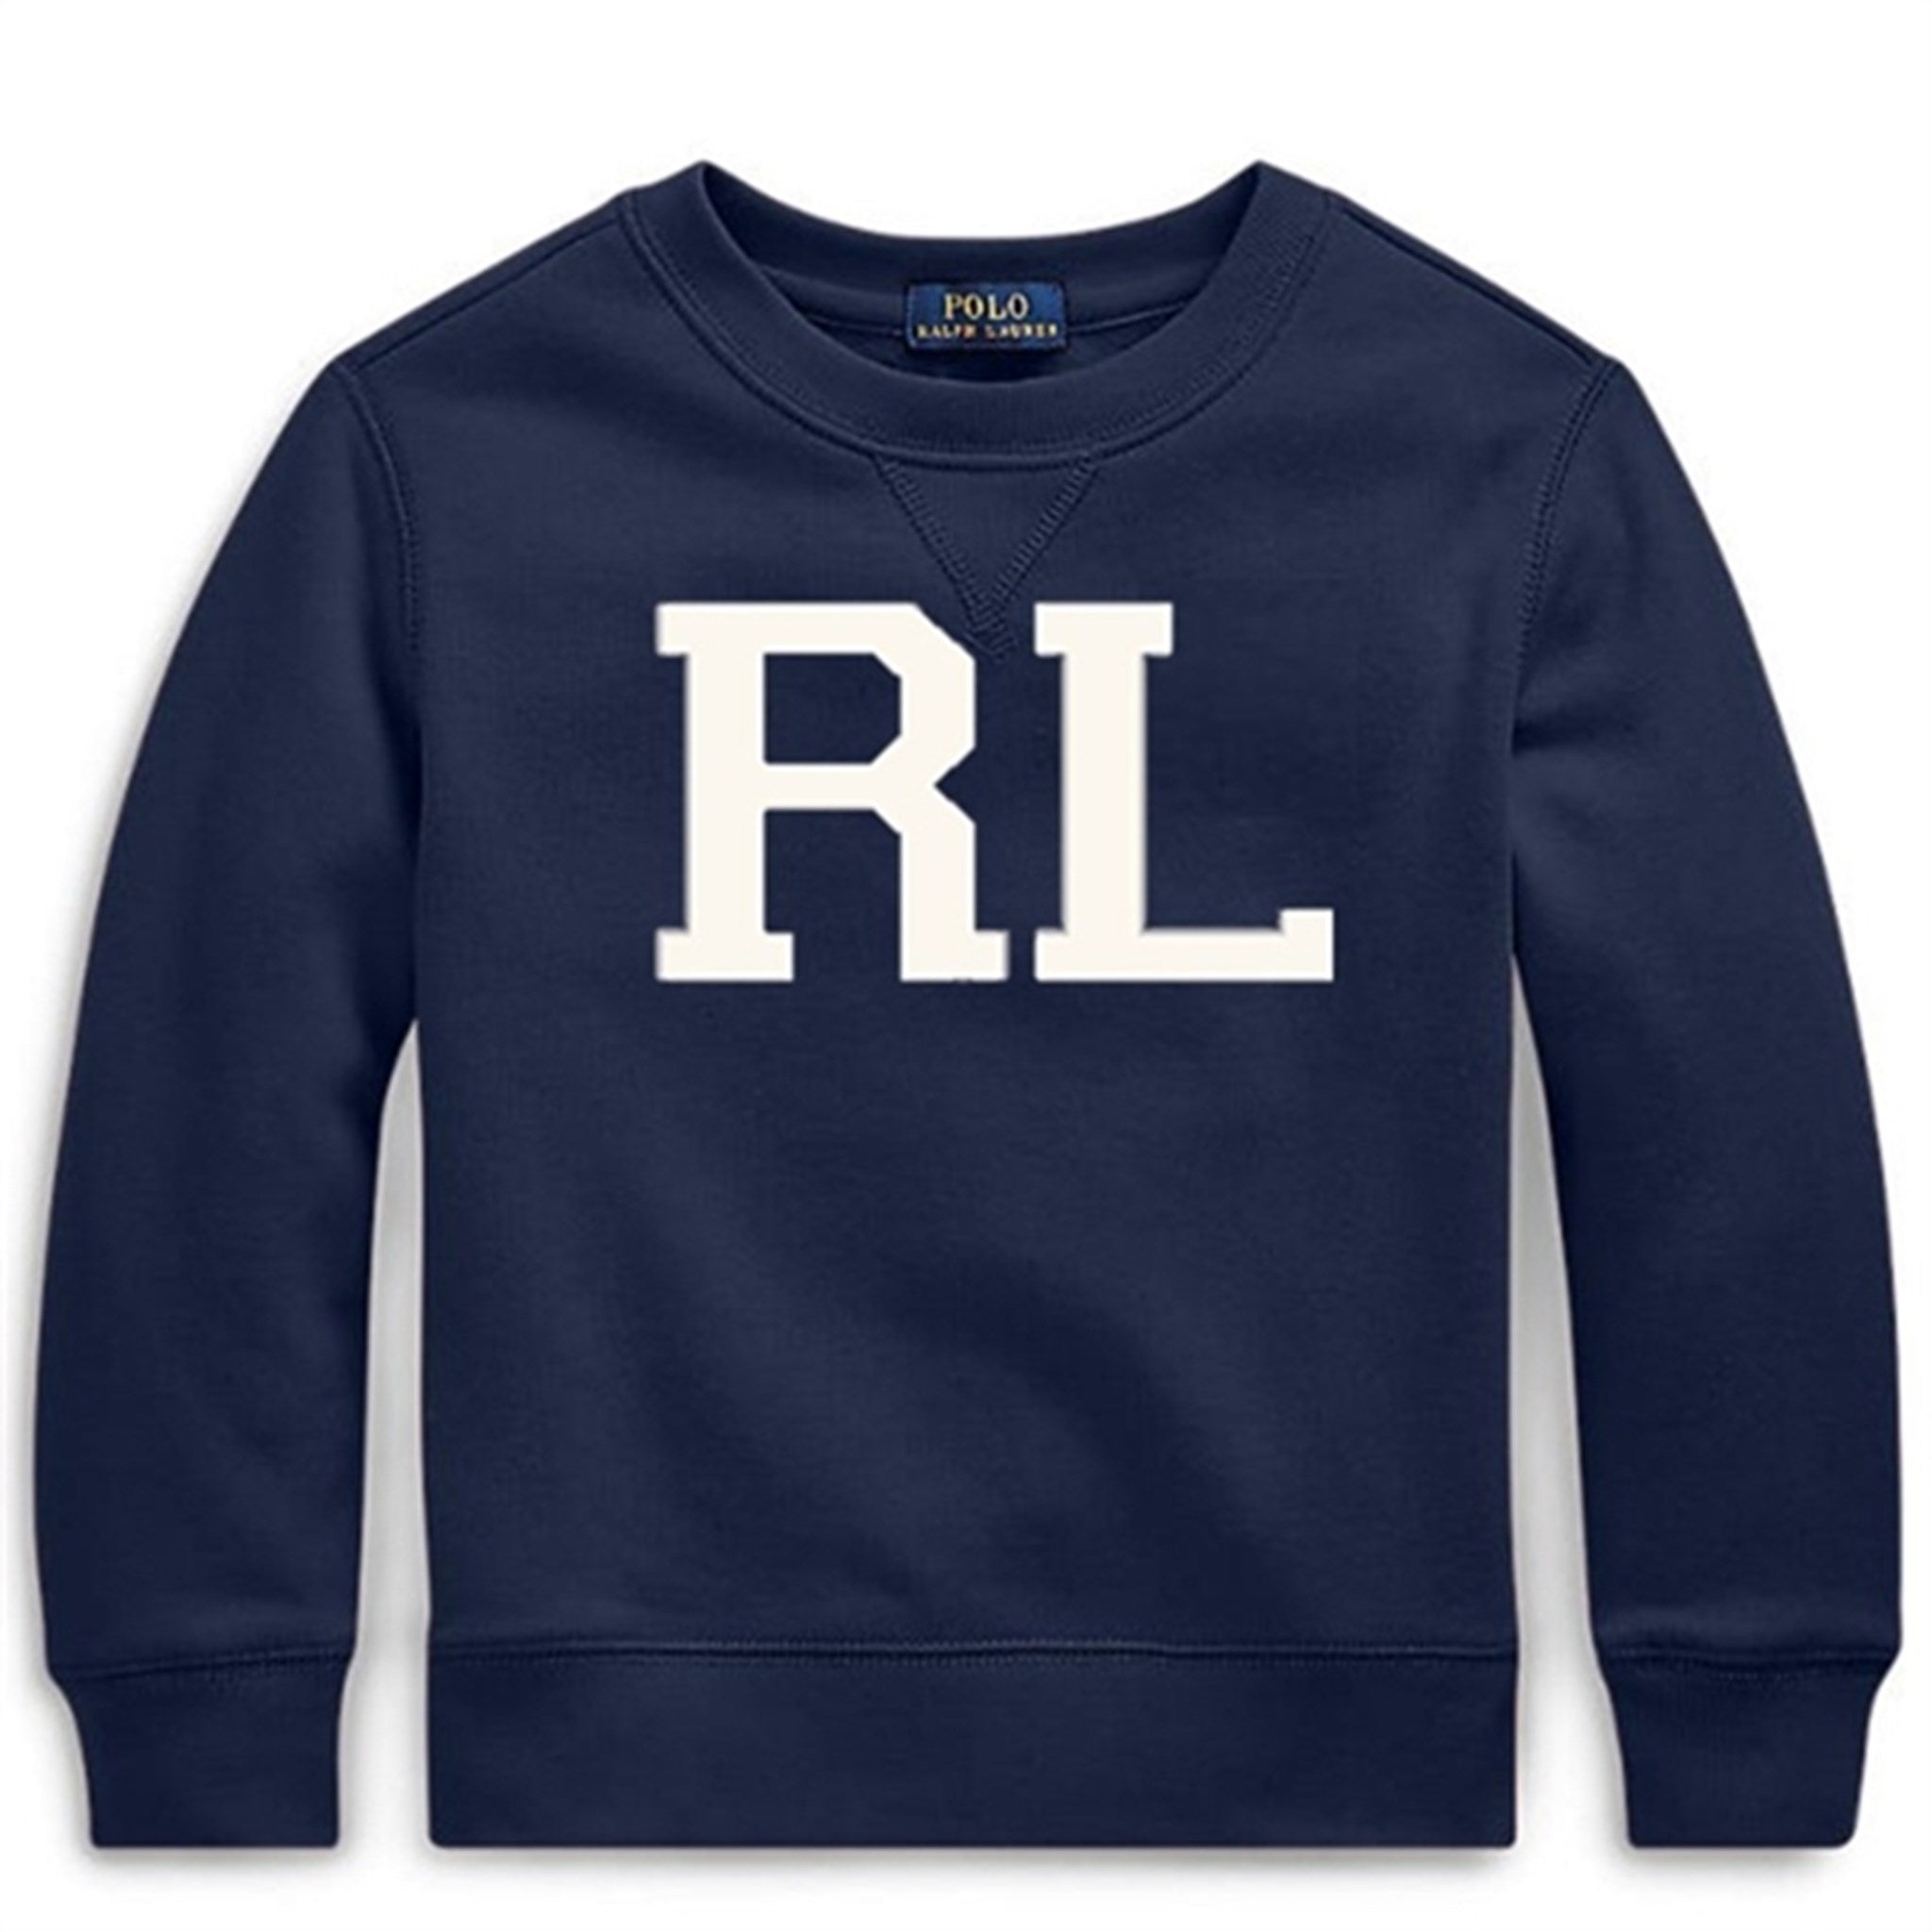 Polo Ralph Lauren Sweatshirt Navy